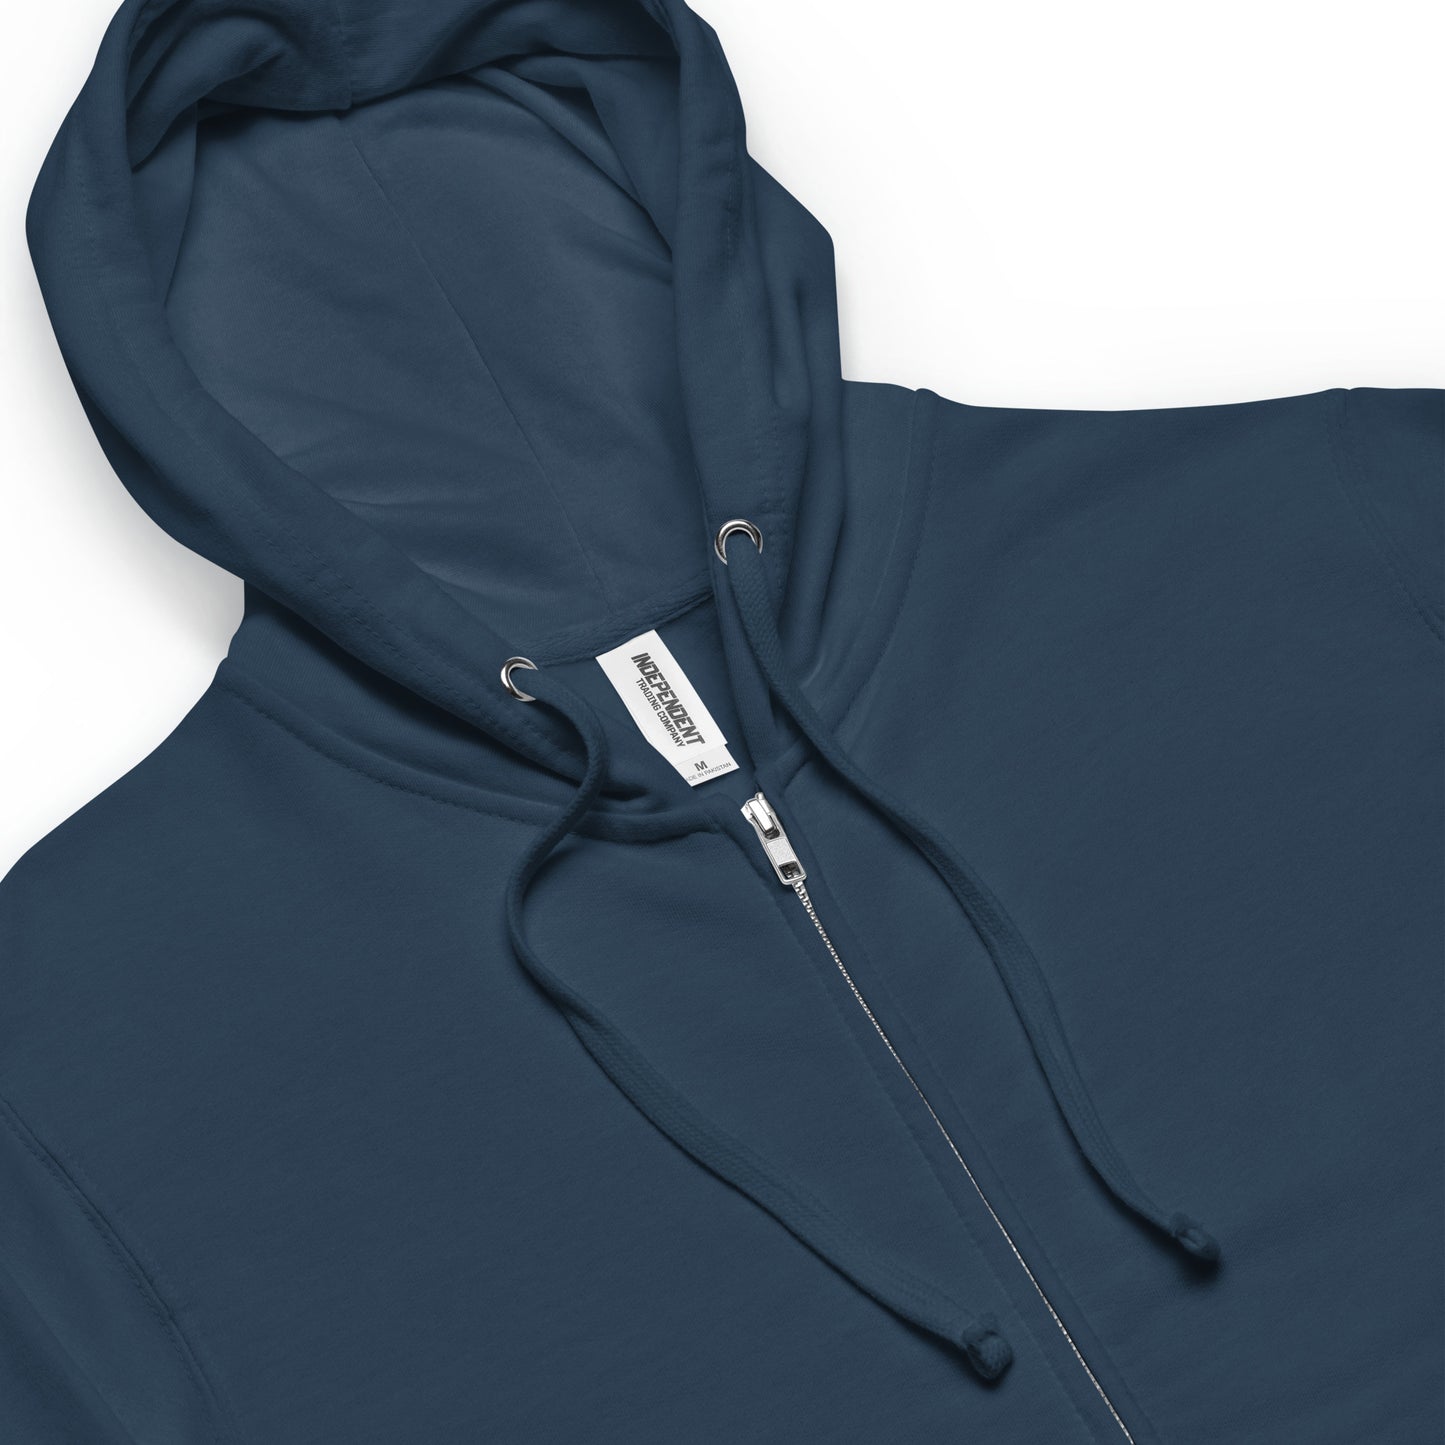 Unisex fleece zip up hoodie navy color. Details of metal zipper, jersey-lined hood, metal eyelets, matching cord.